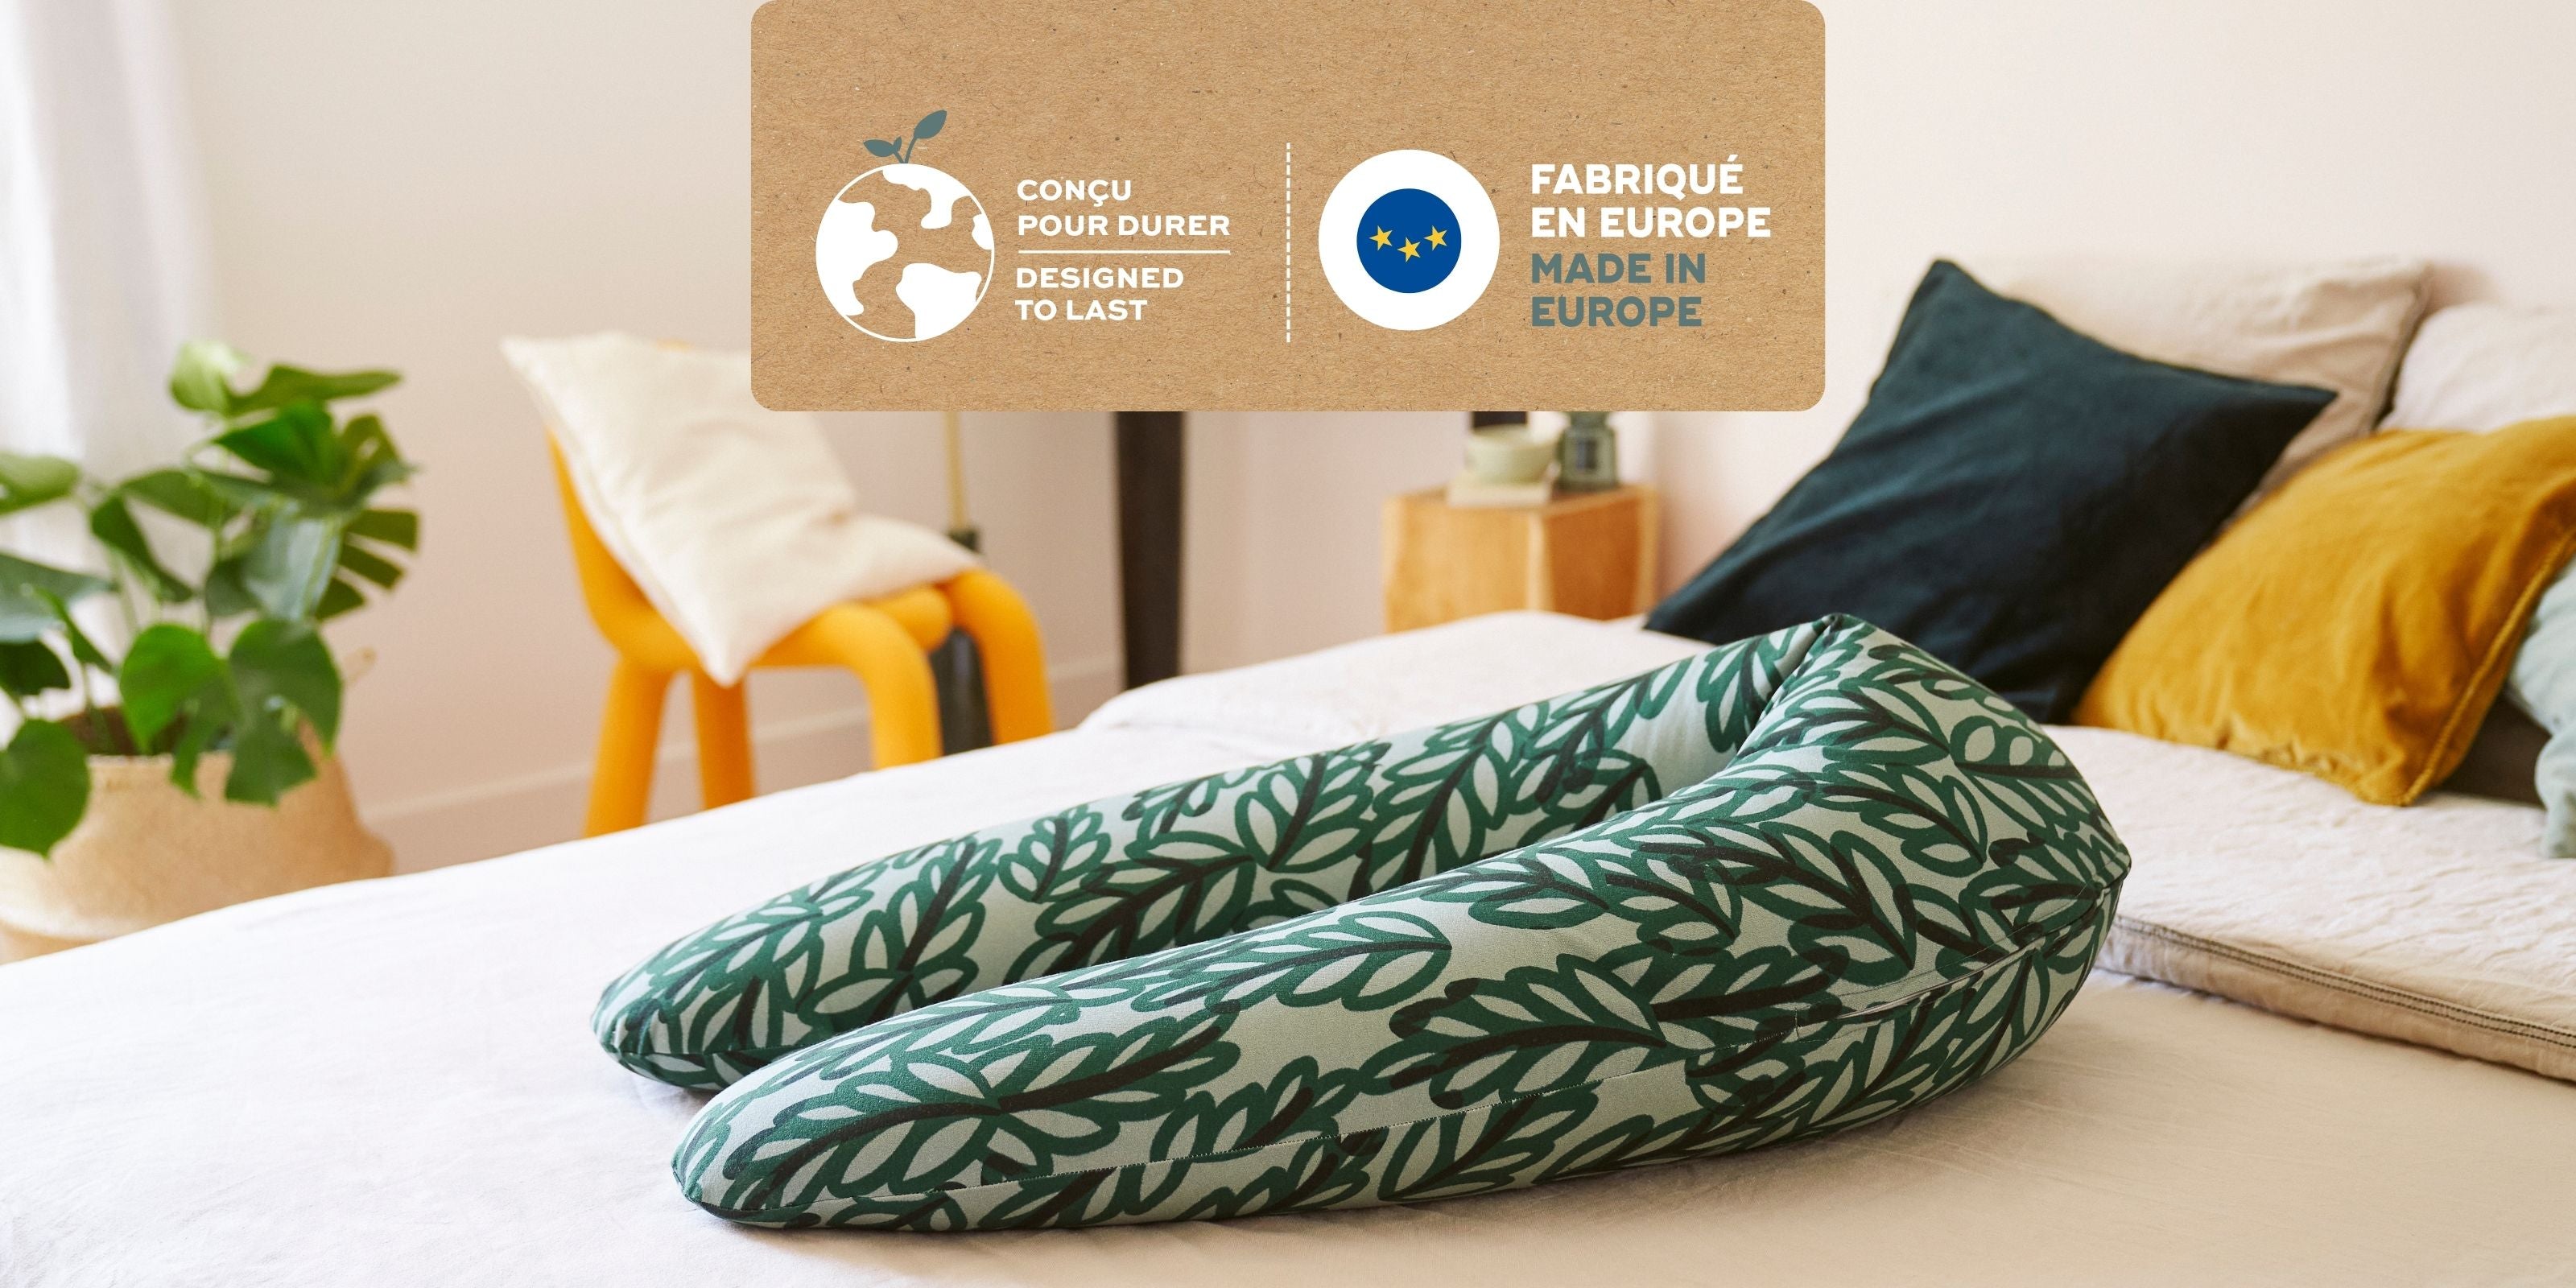 Nachhaltigkeit - Produkte Made in Europe